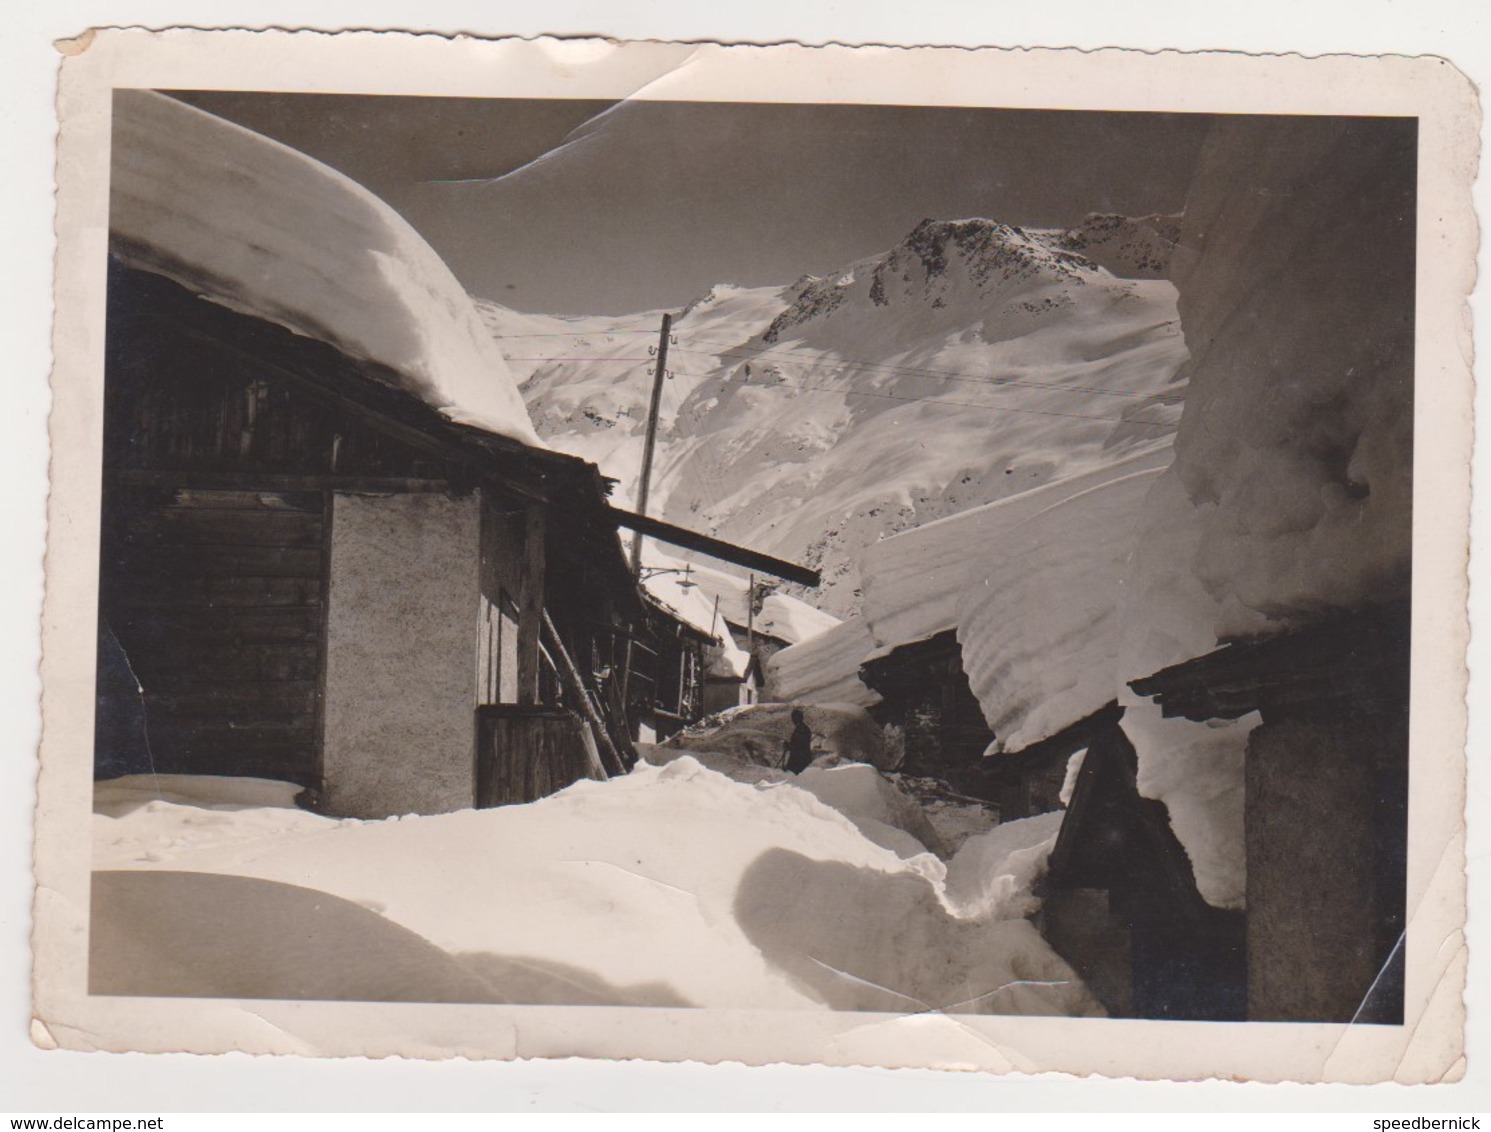 3 Photo Ski groupe 1938-39 France Chalet Mont Paccard Saint Gervais -sport d'hiver photo Boucher les Houches Chamonix